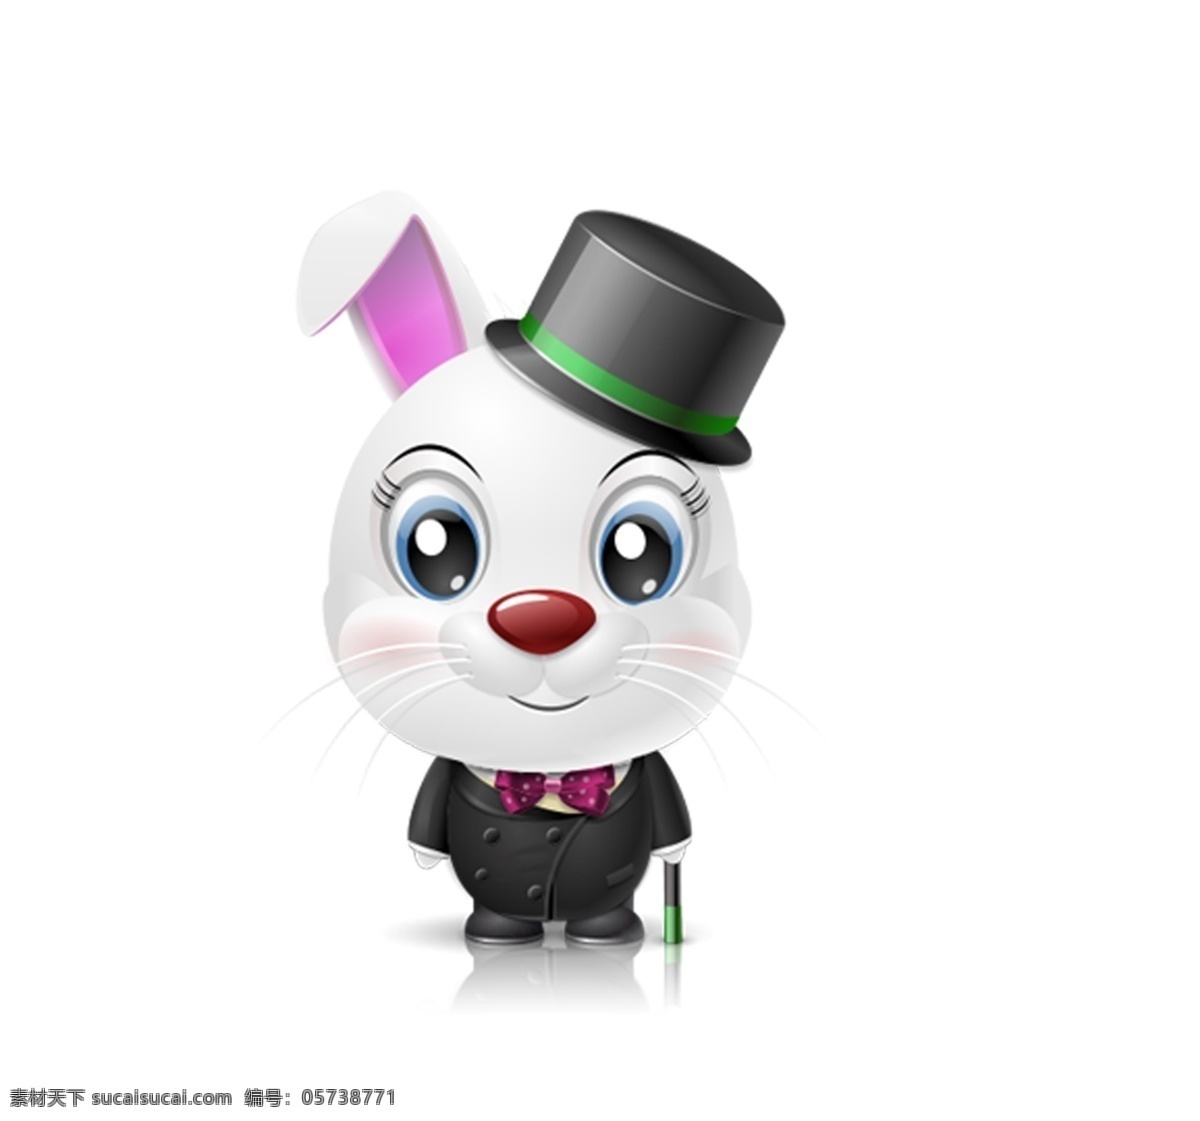 2011 年 春节 兔子 带帽子的兔子 穿 黑色 衣服 驻拐杖的兔子 粉色兔子 扎 蝴蝶结 大眼睛 贺年 可爱 时尚 分层 ps图片 新年兔子 活泼 源文件